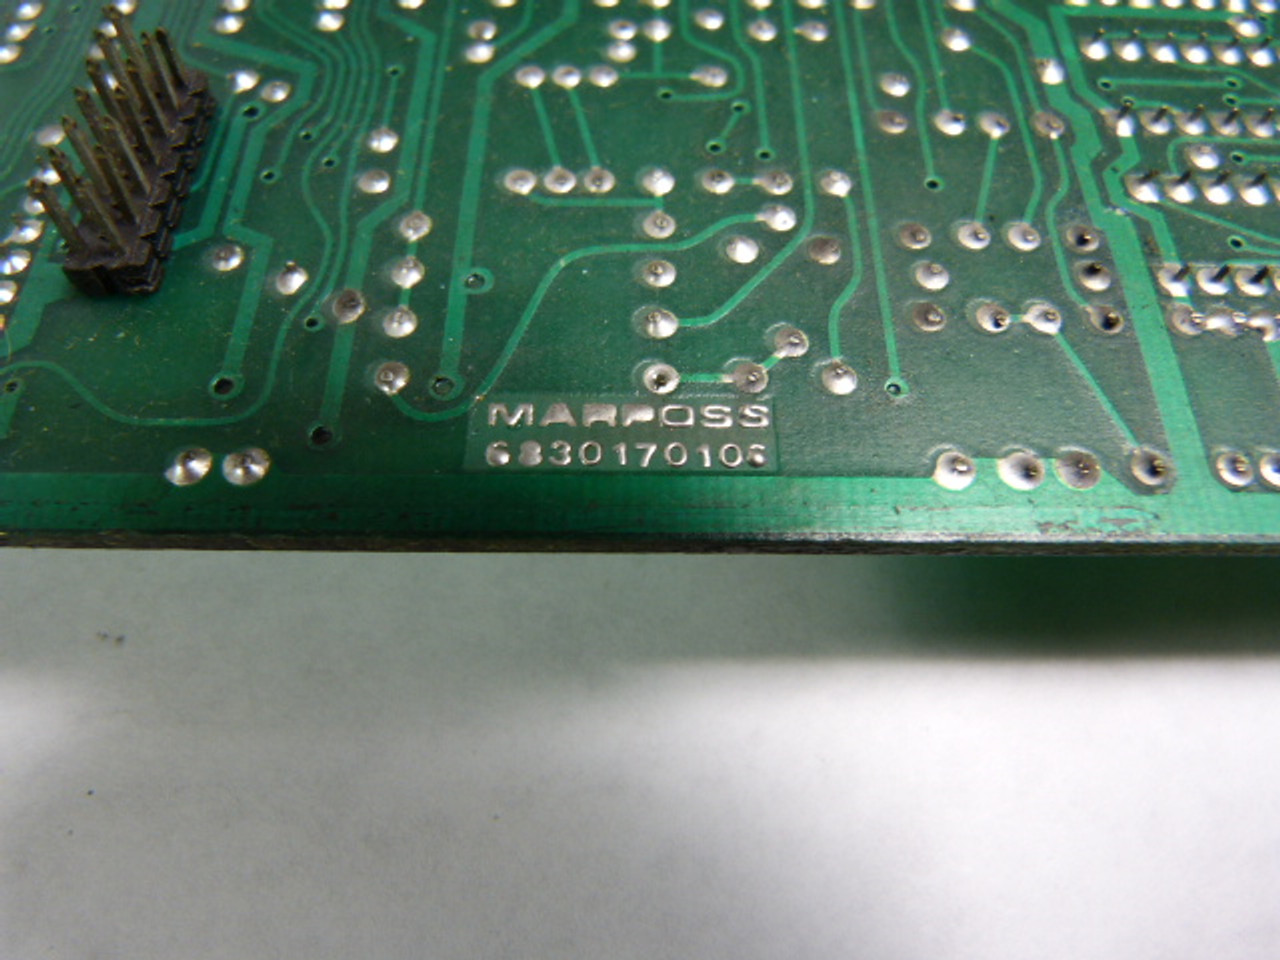 Marposs 6830170106 Circuit Board Module USED